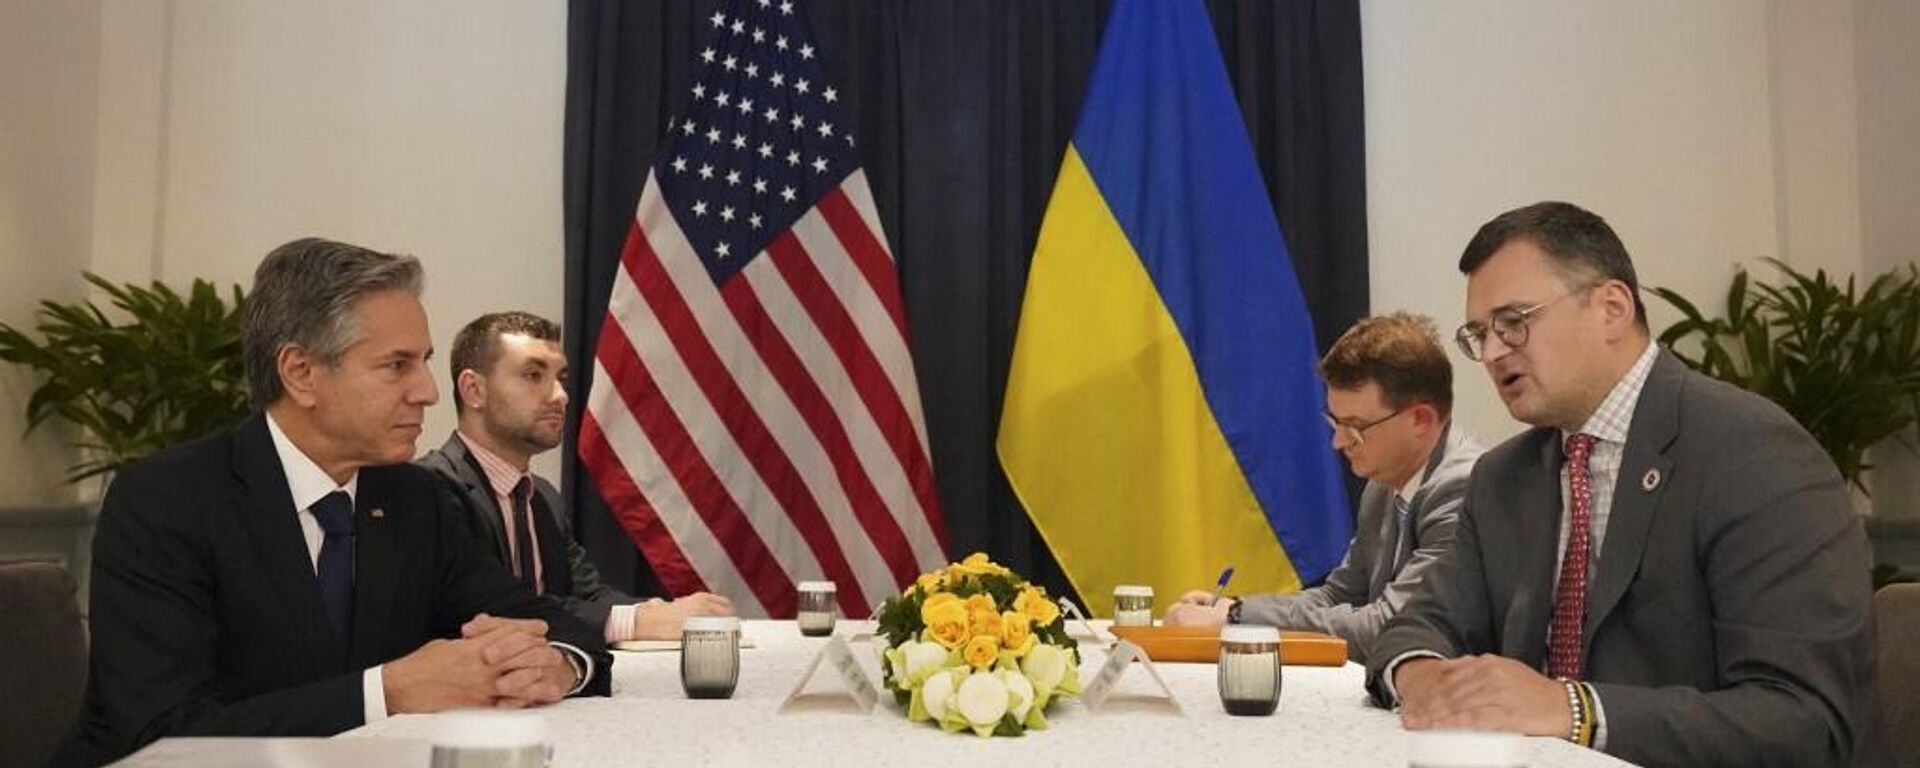 El secretario de Estado de EEUU, Anthony Blinken, con el ministro de Exteriores de Ucrania, Dmytro Kuleba, en Phnom Penh en noviembre de 2022 - Sputnik Mundo, 1920, 06.12.2022